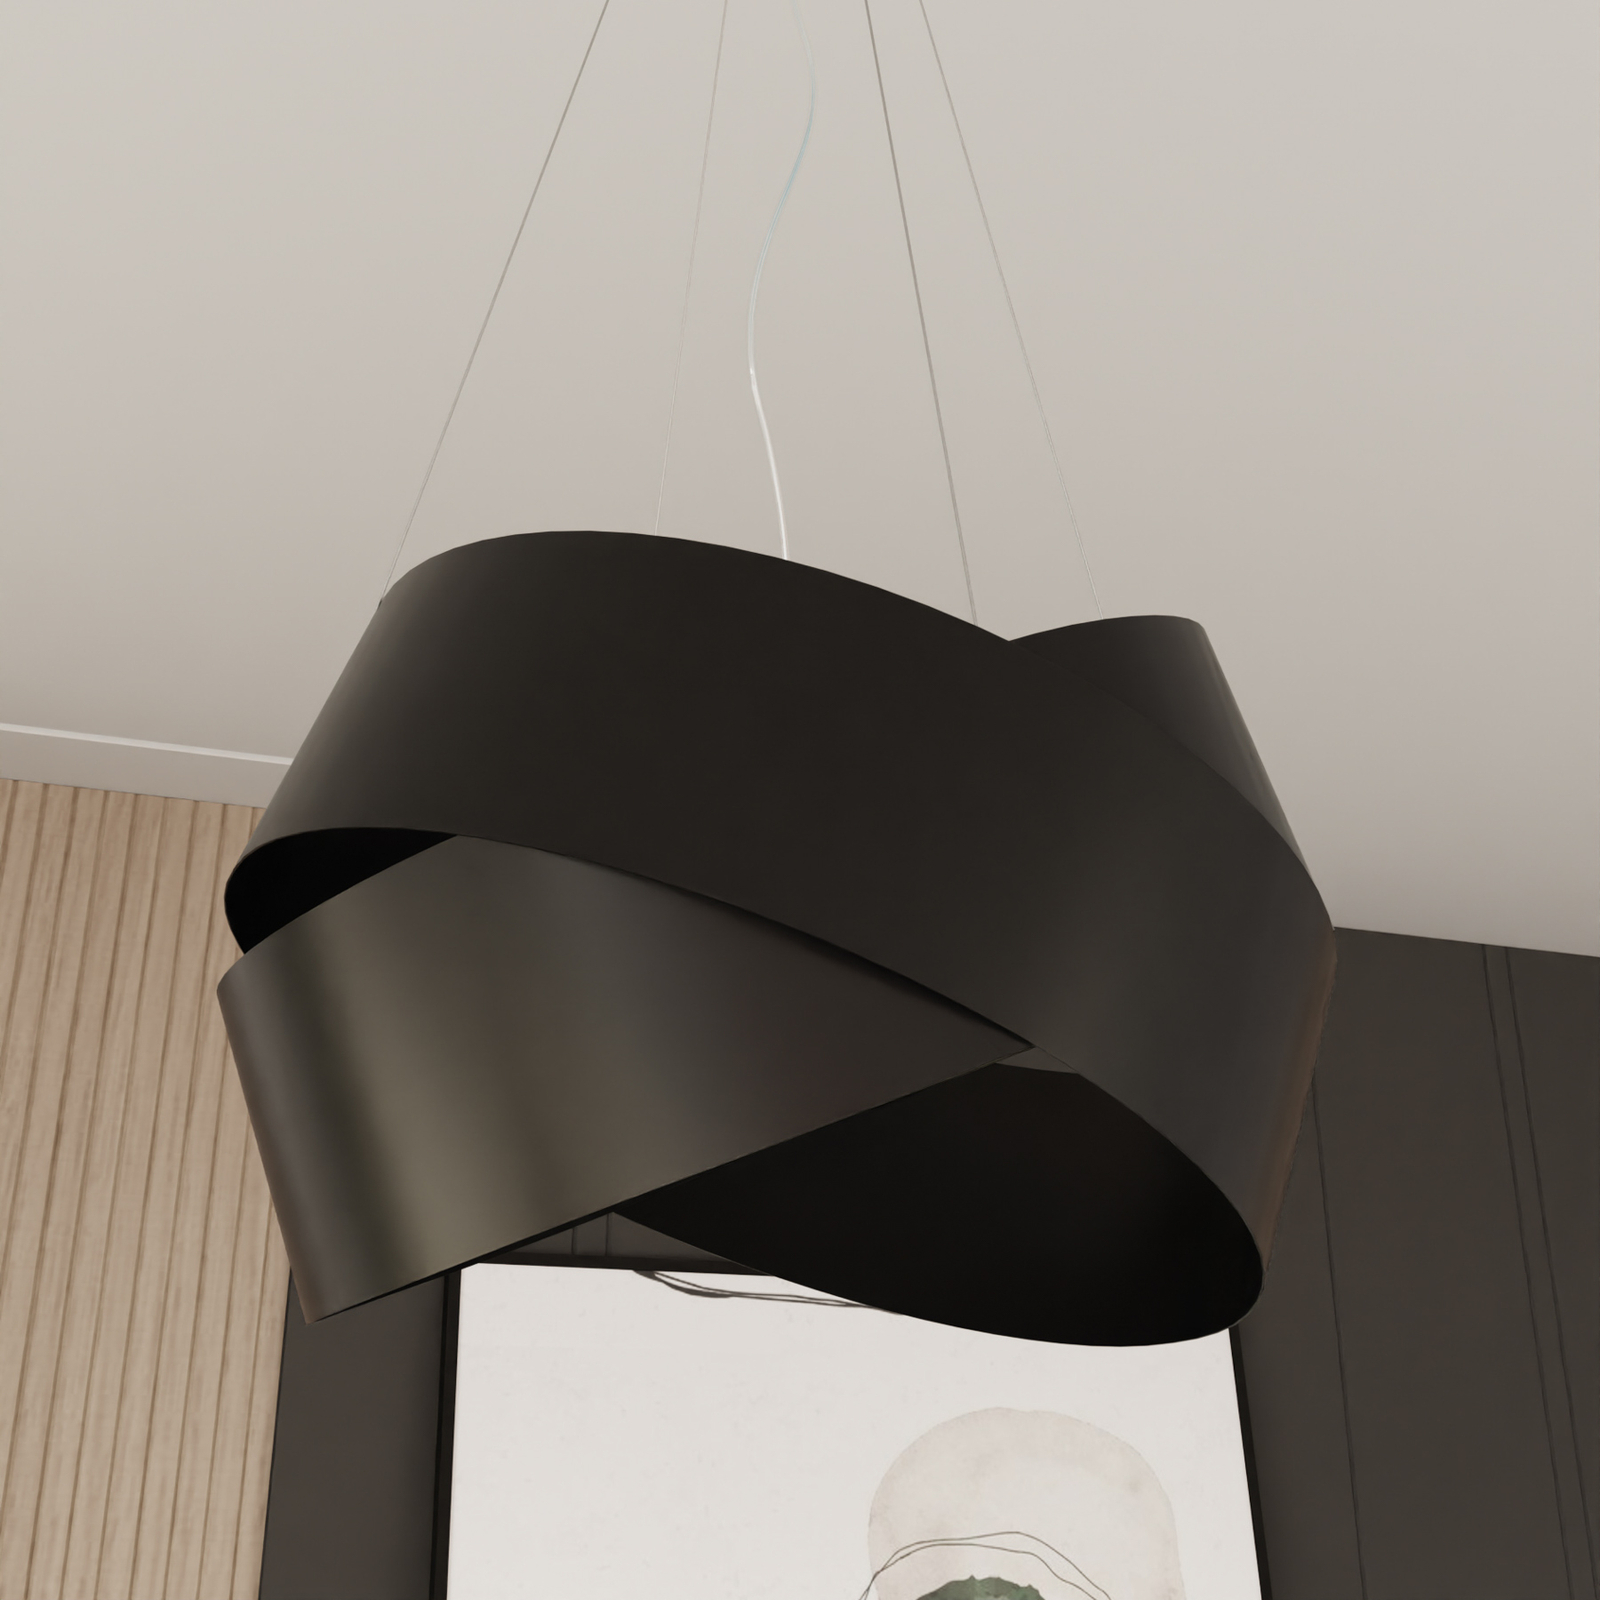 Vieno függő lámpa fekete acélgyűrűkből